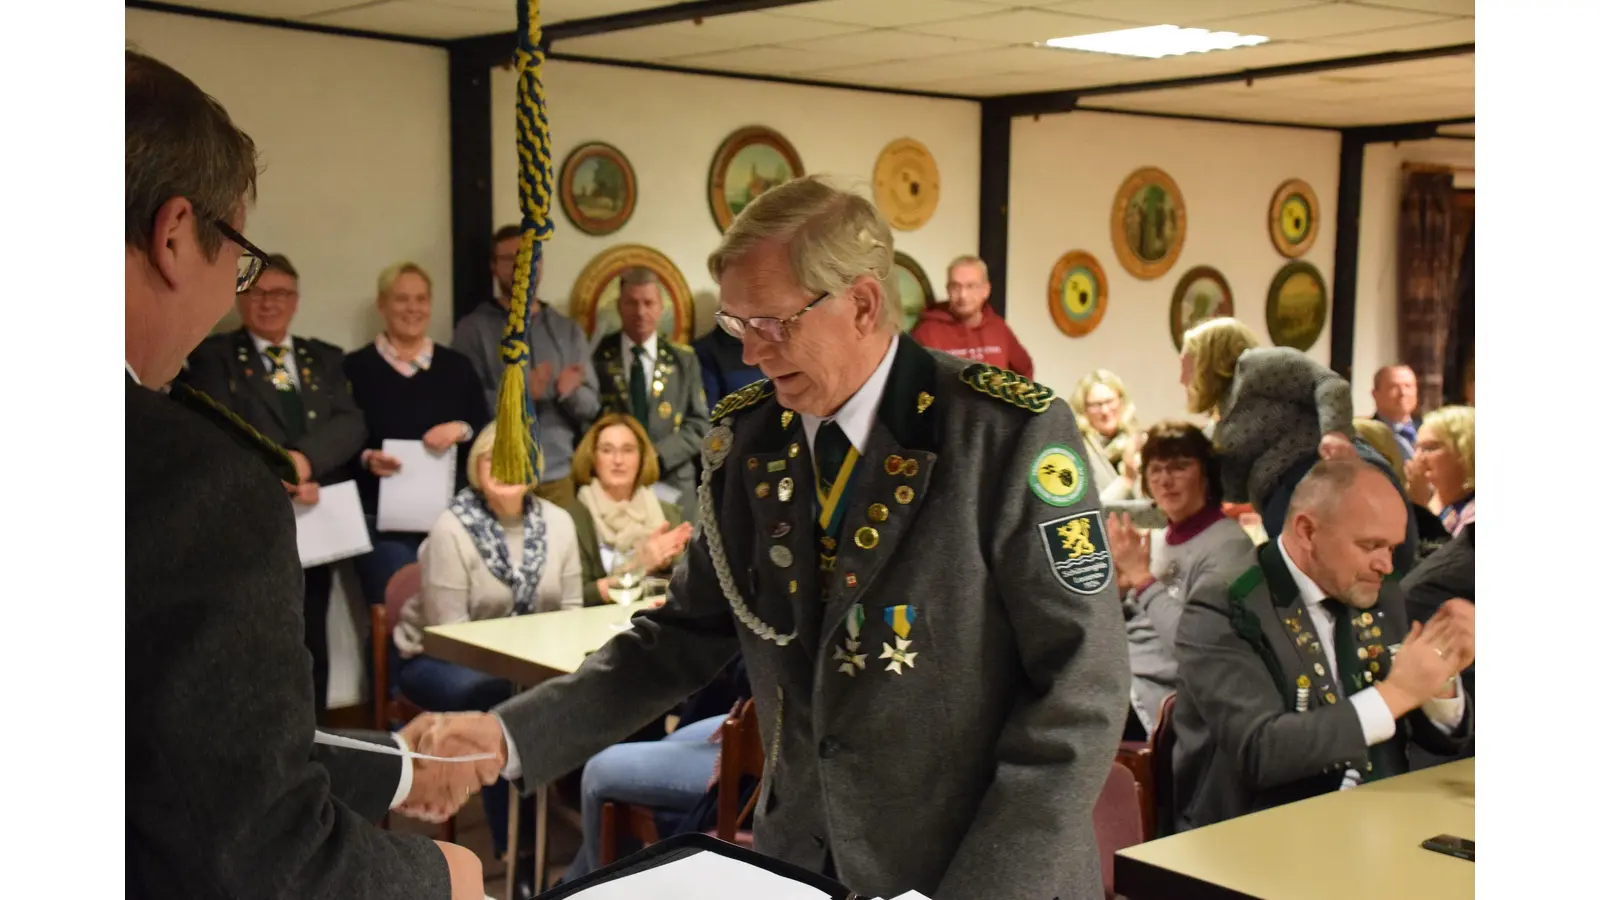 Der Ehrenvorsitzende Gerth Baerfacker ist seit 70 Jahren Mitglied der Schützengilde Lauenau. (Foto: privat)